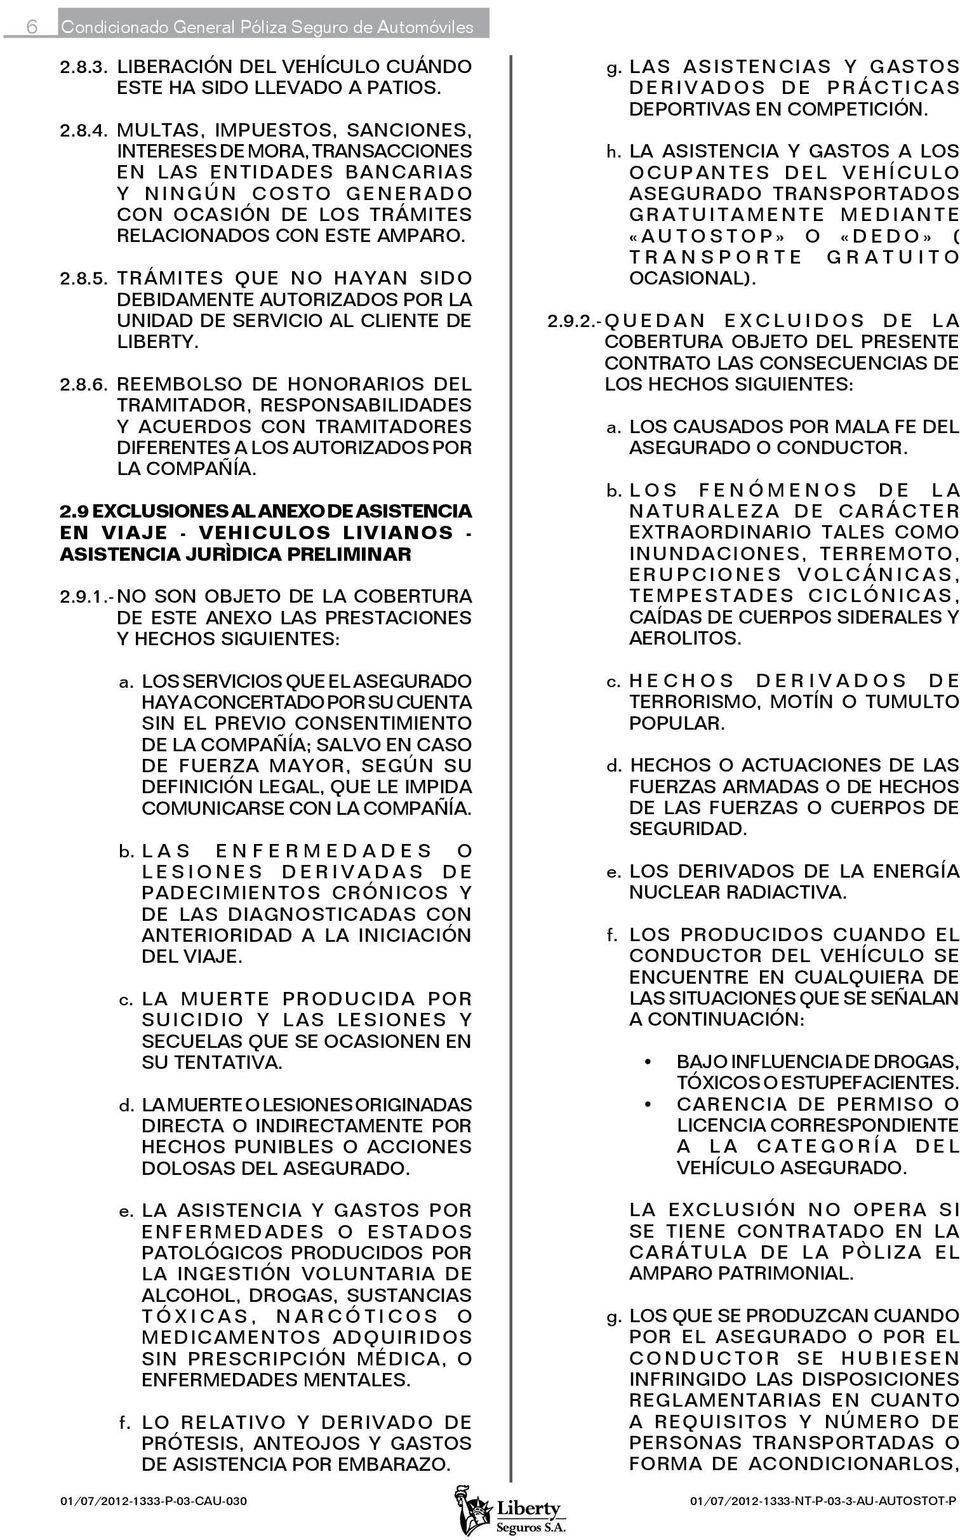 TRÁMITES QUE NO HAYAN SIDO DEBIDAMENTE AUTORIZADOS POR LA UNIDAD DE SERVICIO AL CLIENTE DE LIBERTY. 2.8.6.